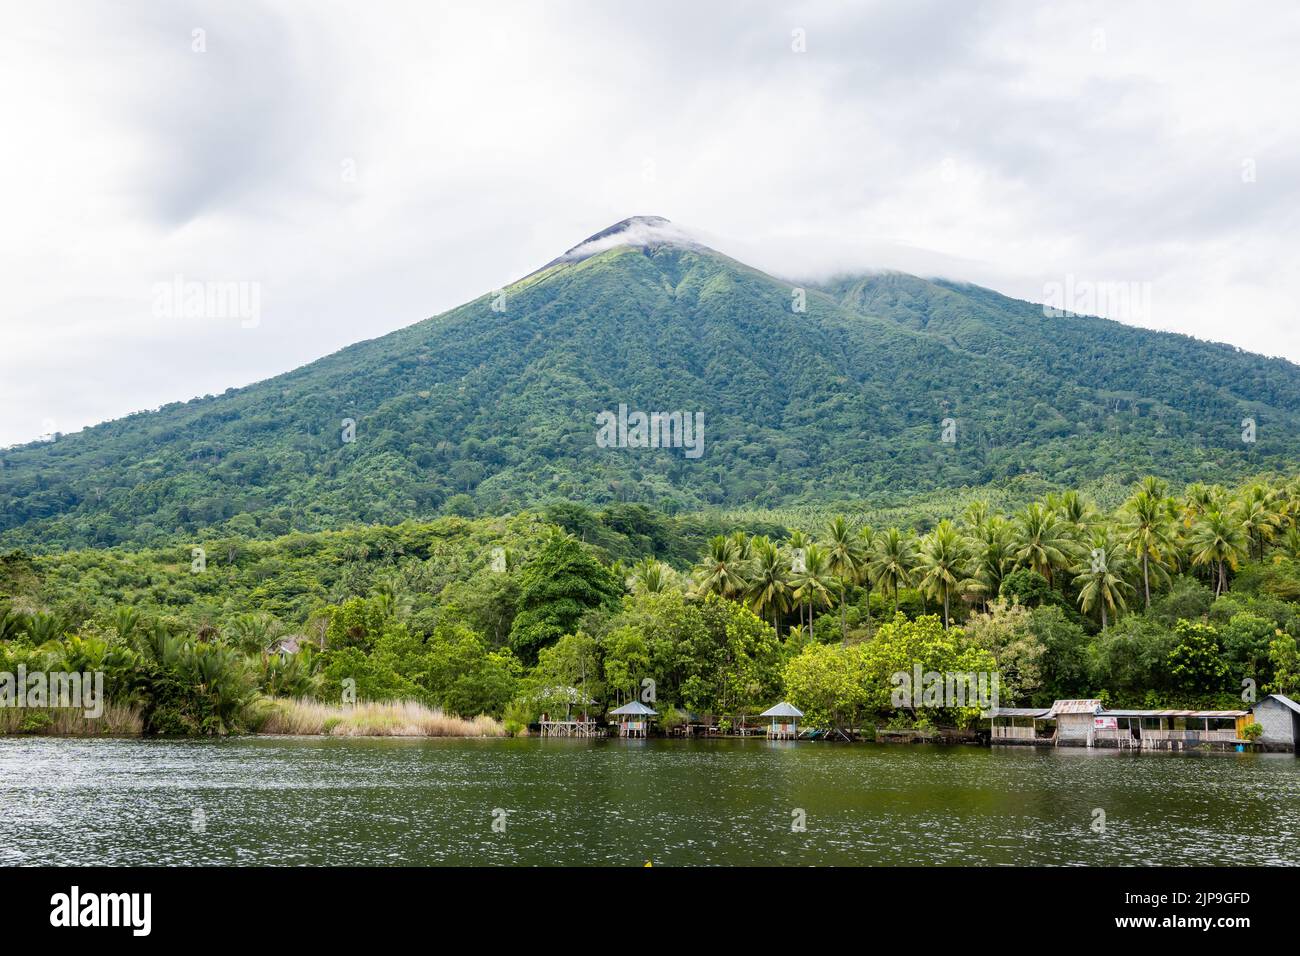 Der Mount Gamalama ist ein aktiver Vulkan. Ternate Island, Indonesien. Stockfoto